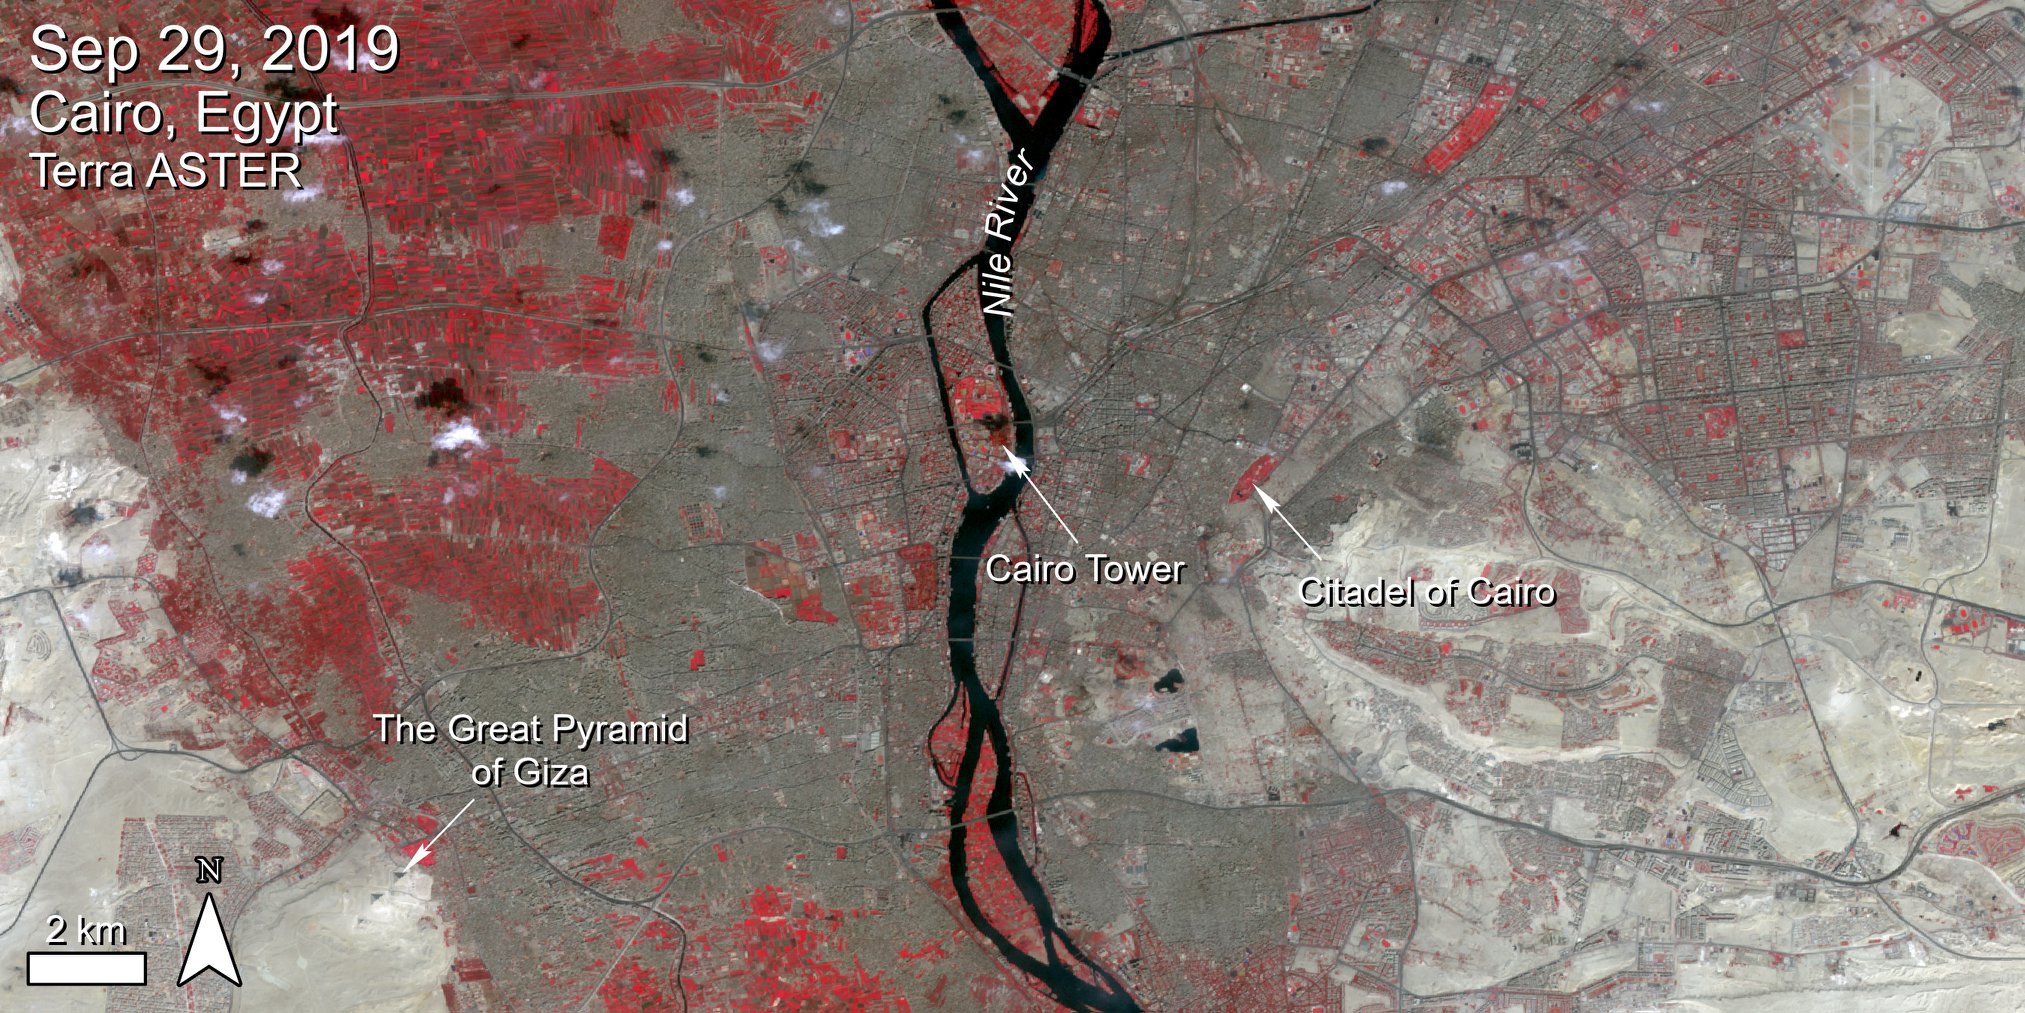 Terra ASTER precision terrain corrected data over Cairo, Egypt.